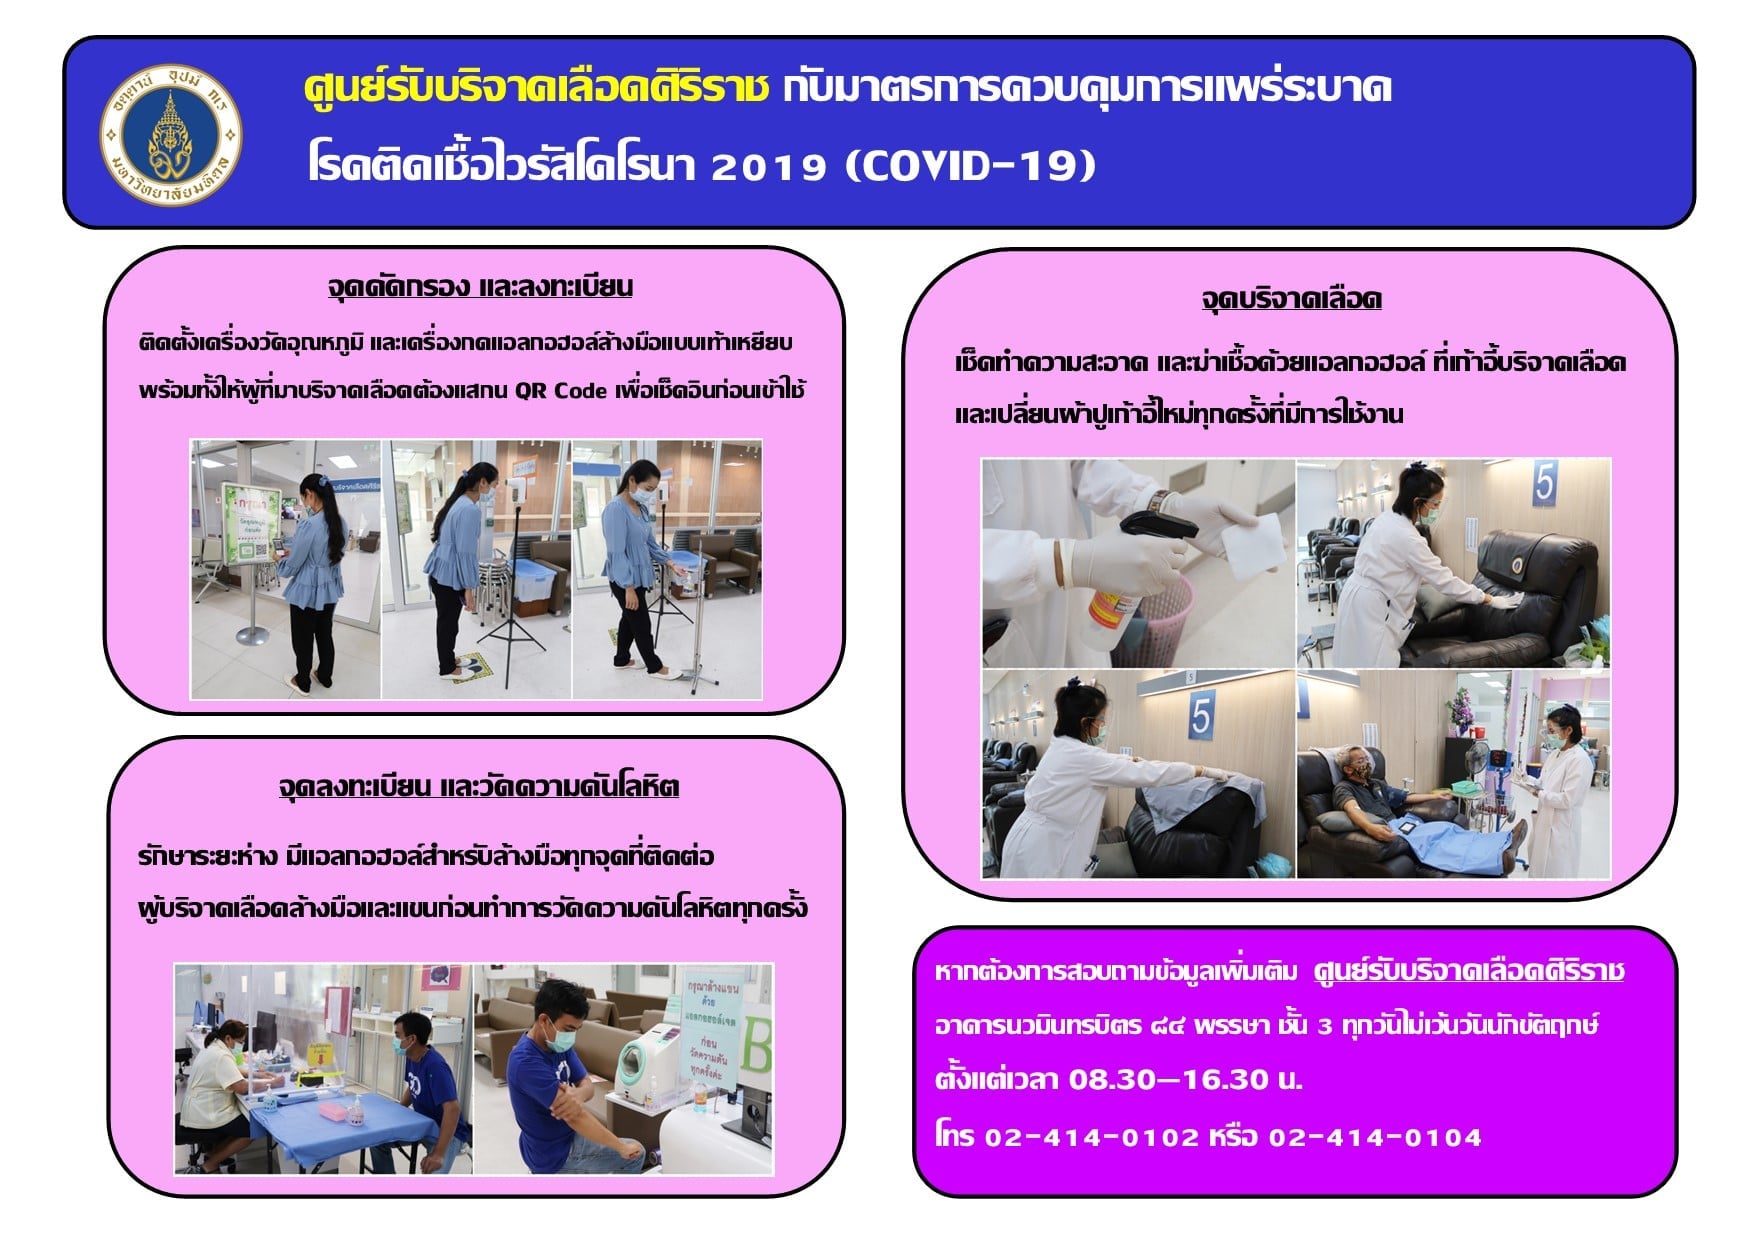 ศิริราชขาดแคลนเลือดทุกกรุ๊ป ชวนคนไทยบริจาคเลือดช่วยผู้ป่วยด่วน!